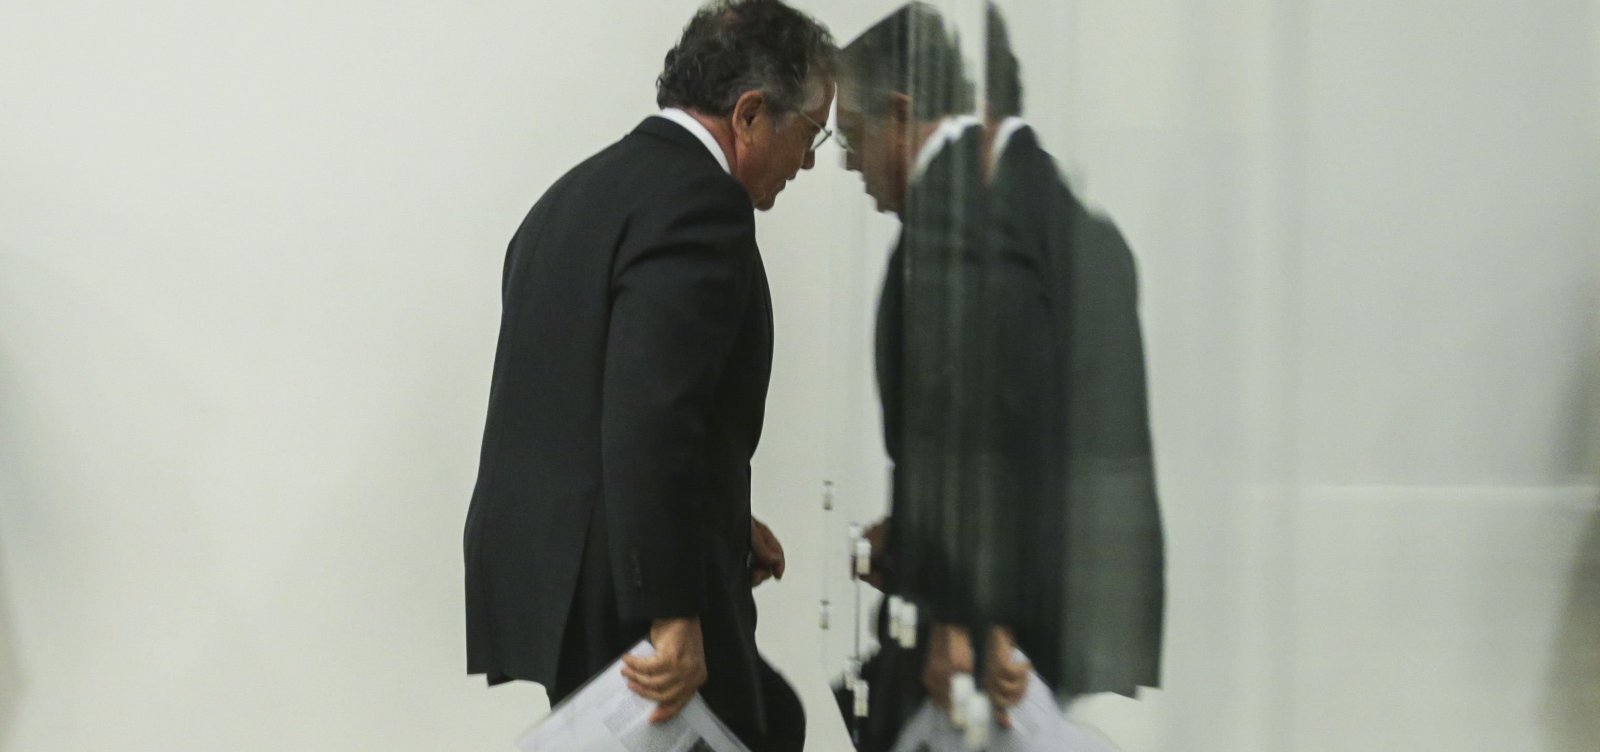 Marco Aurélio enviou a instâncias inferiores 28 casos semelhantes ao de Flávio Bolsonaro